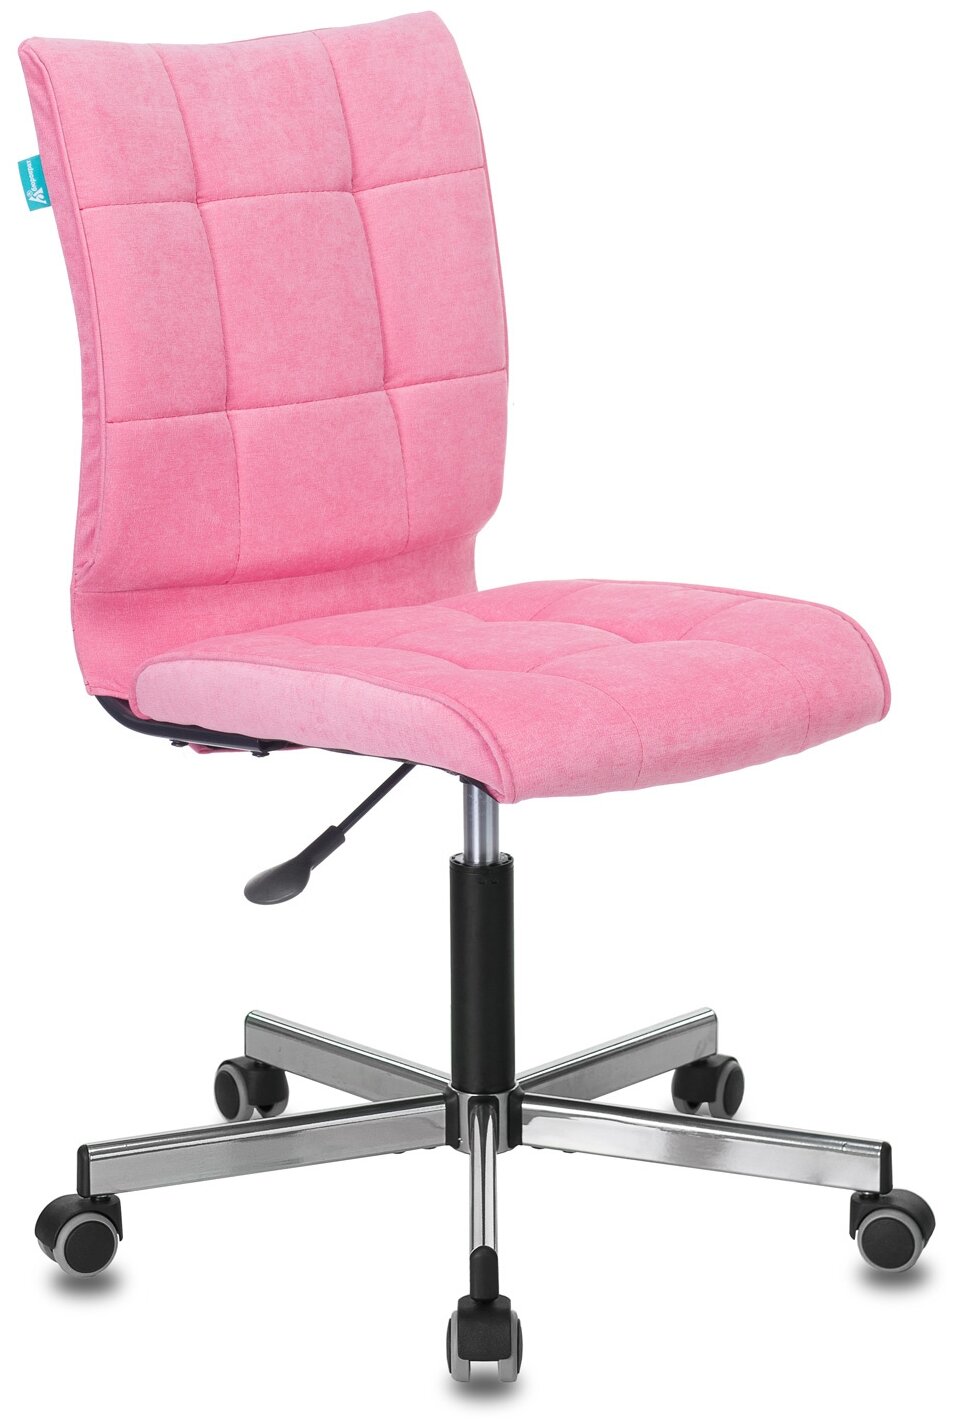 Кресло компьютерное CH-330M розовый, ткань / Кресло для офиса, детской комнаты, для школьника, ребенка